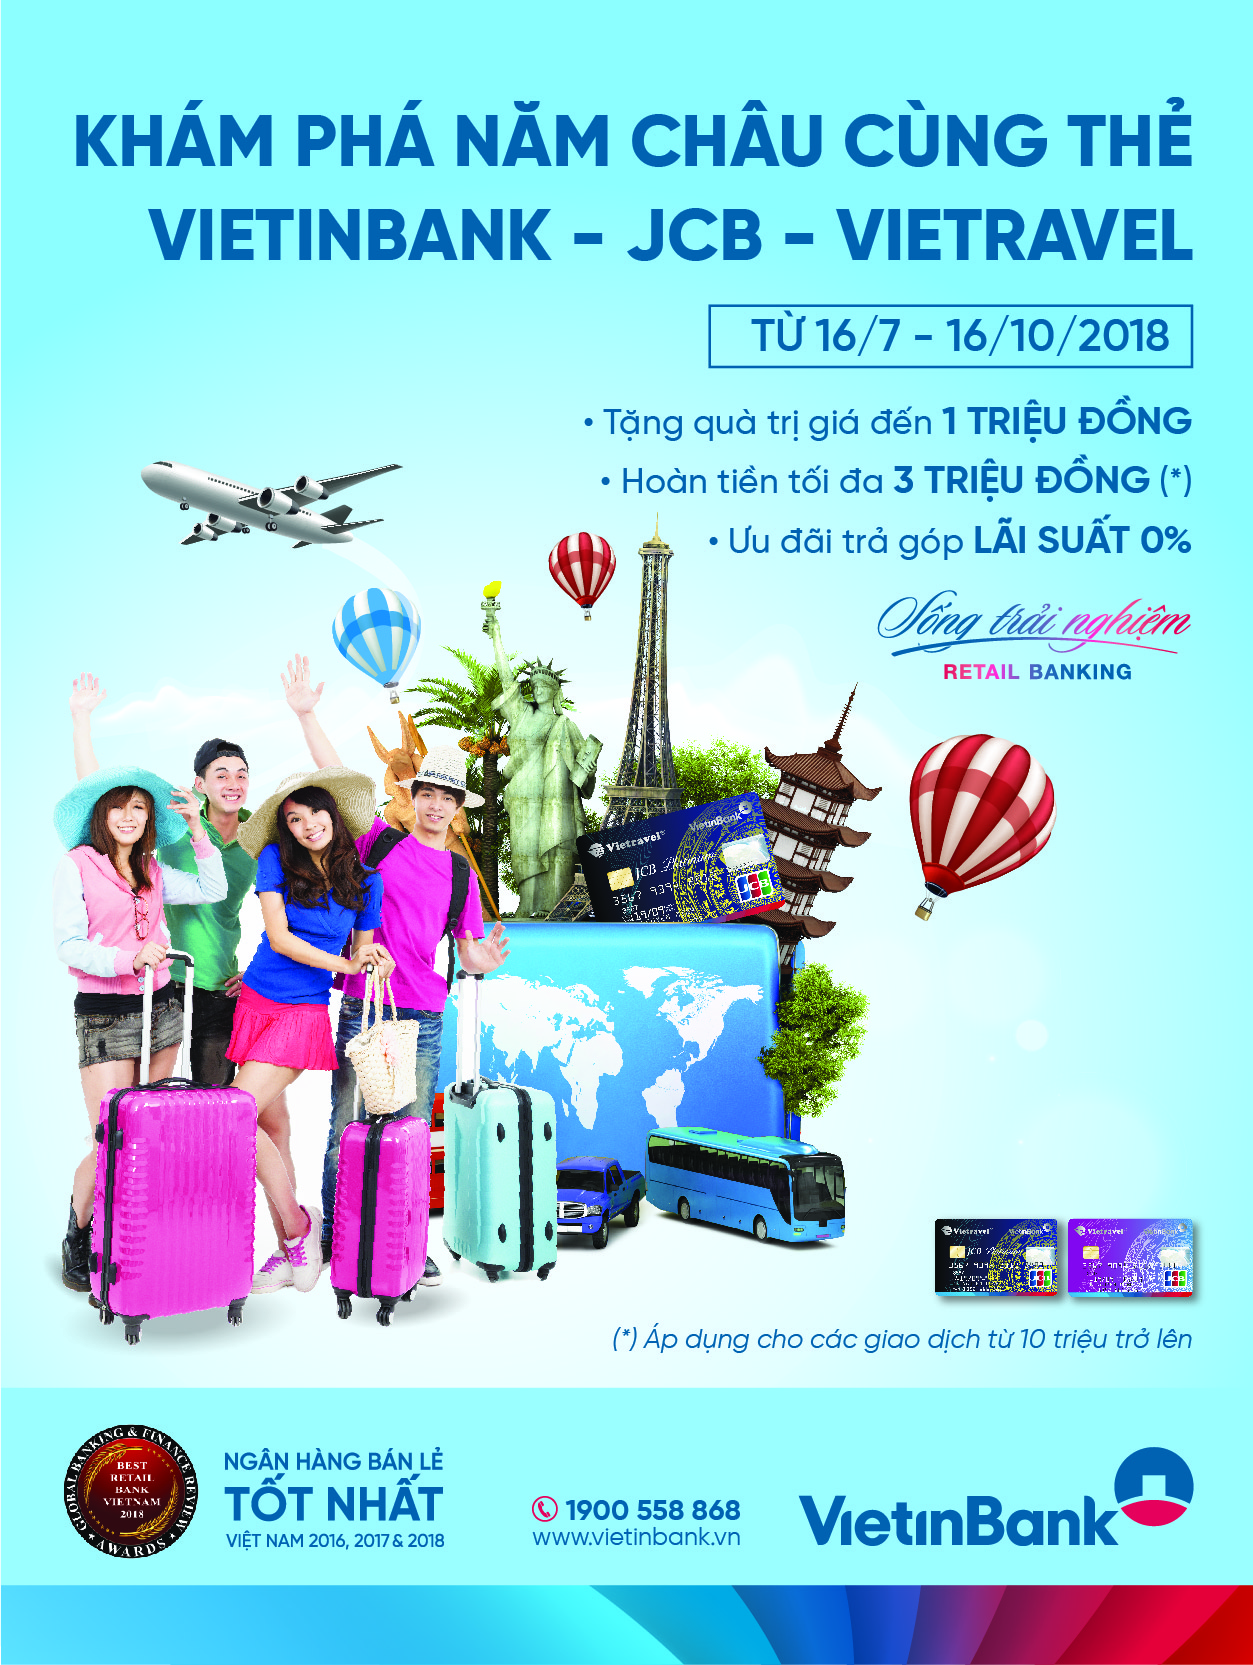 Khám phá năm châu cùng thẻ VietinBank - JCB - Vietravel - Hình 1